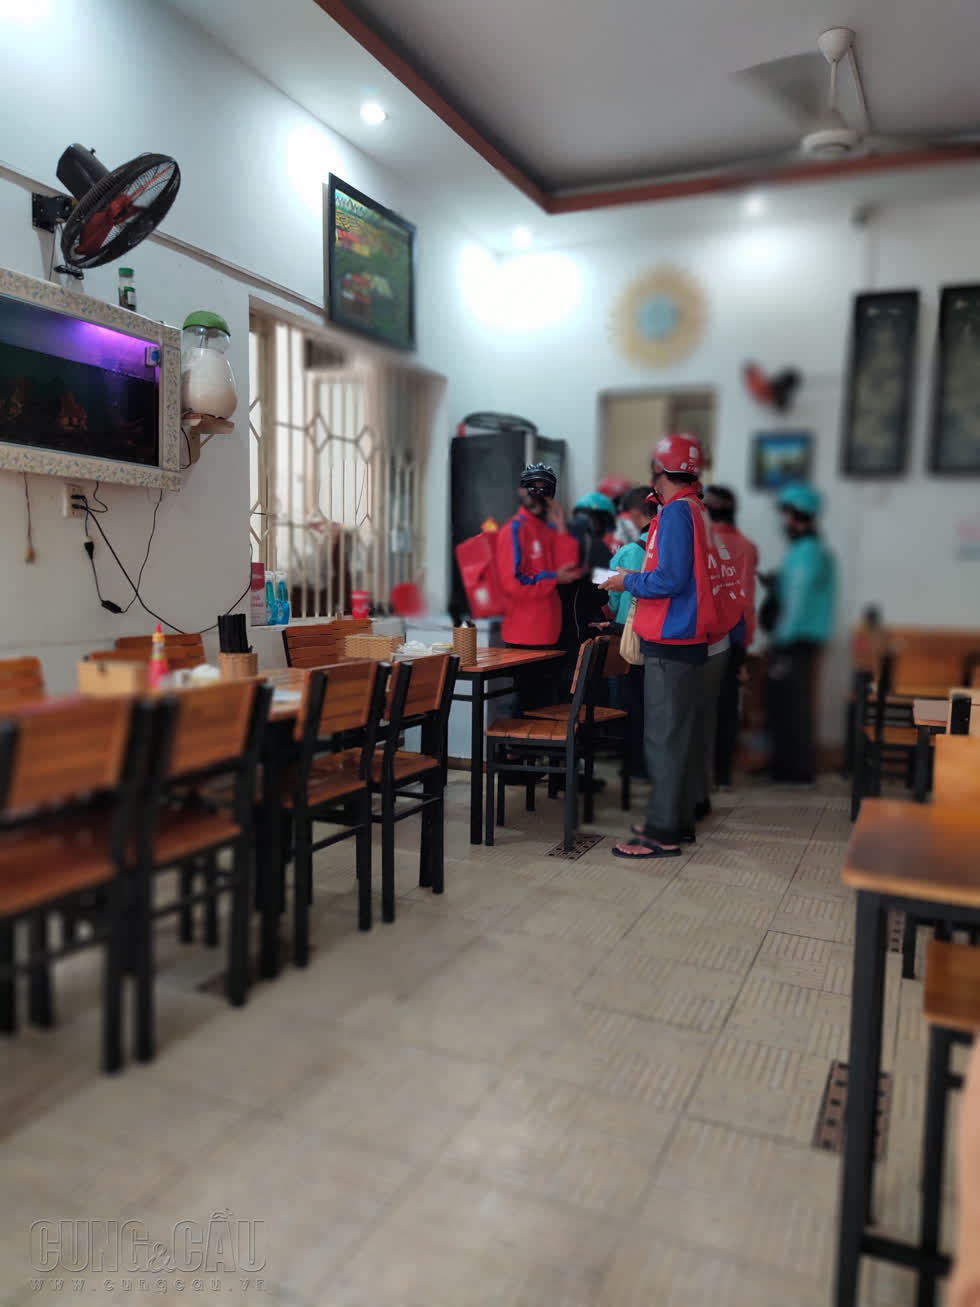 Quán ăn trên đường Nguyễn Sơn Hà, quận 3 đìu hiu khách, chỉ vài shipper đến mua hàng đồ ăn mang đi - Anh: Cẩm Viên. 